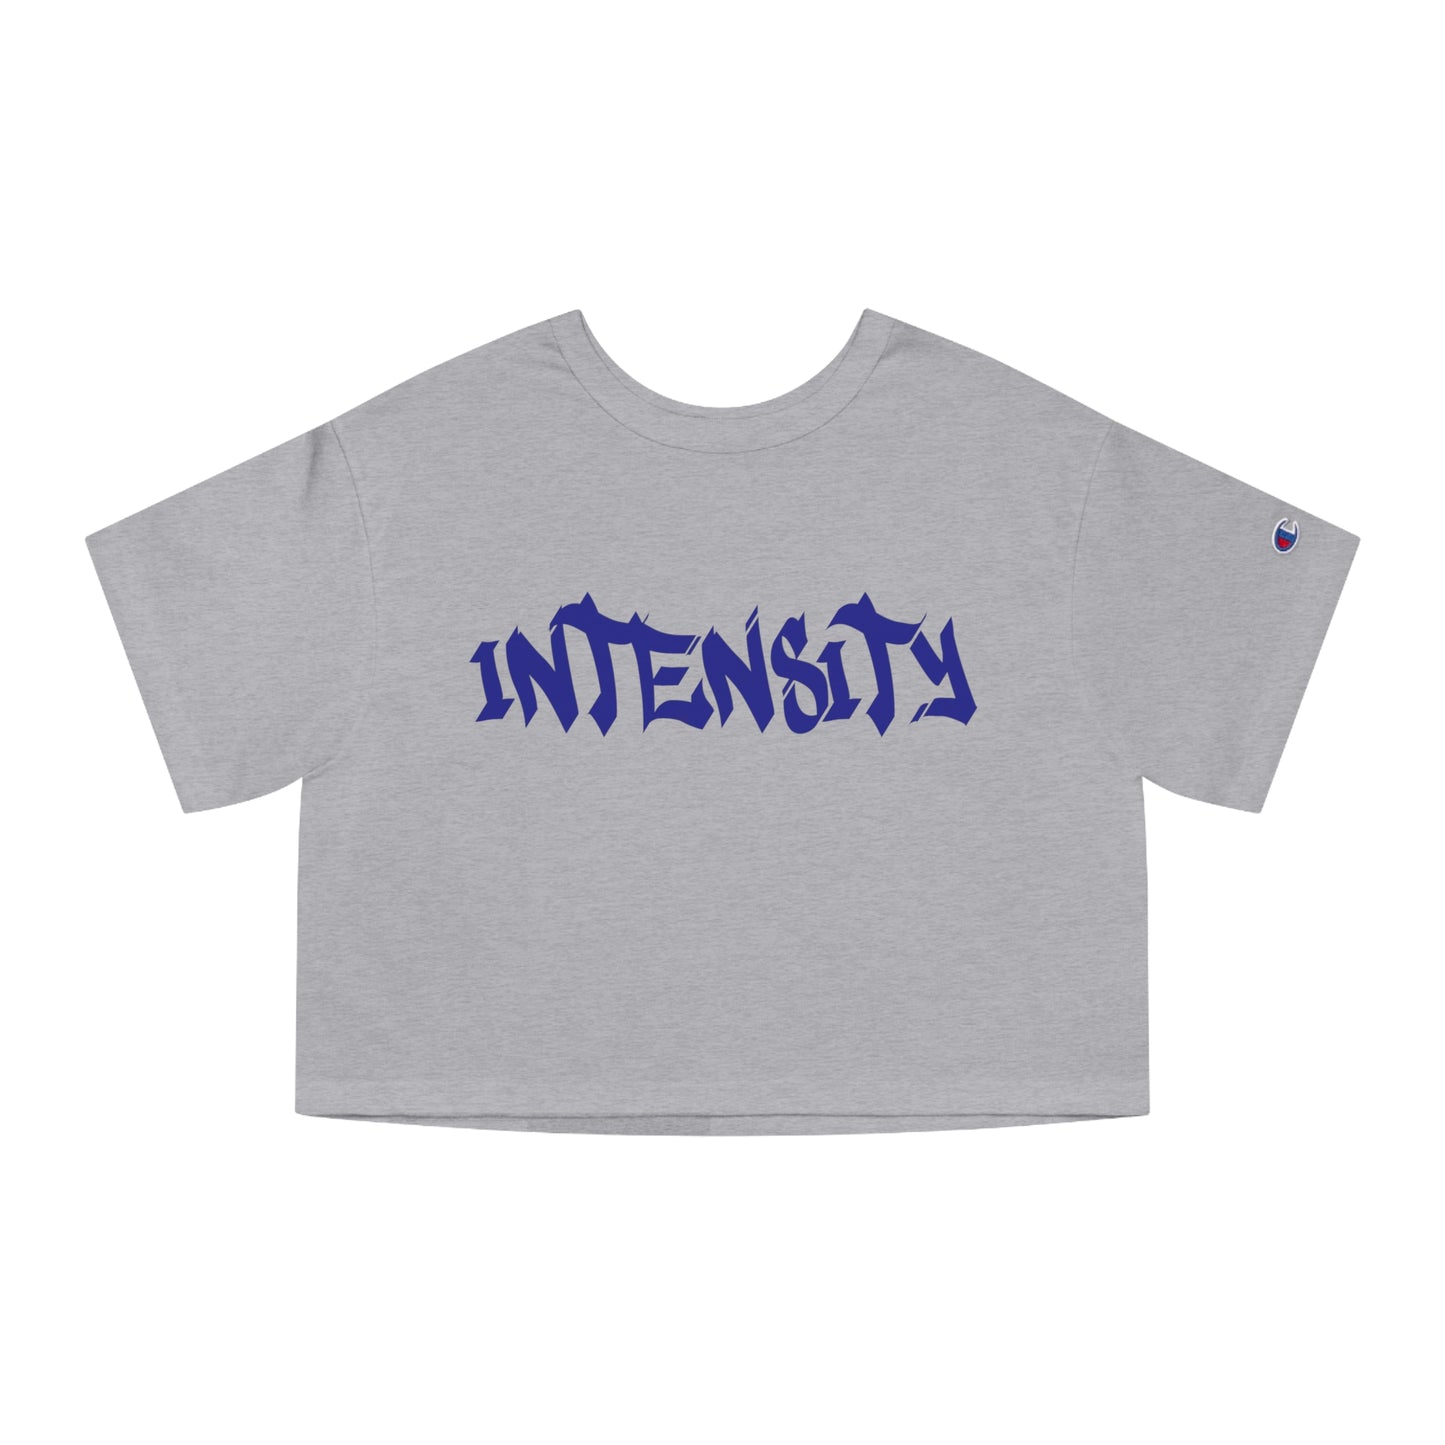 Women's "INTENSITY" Crop Top T-Shirt Blue Logo